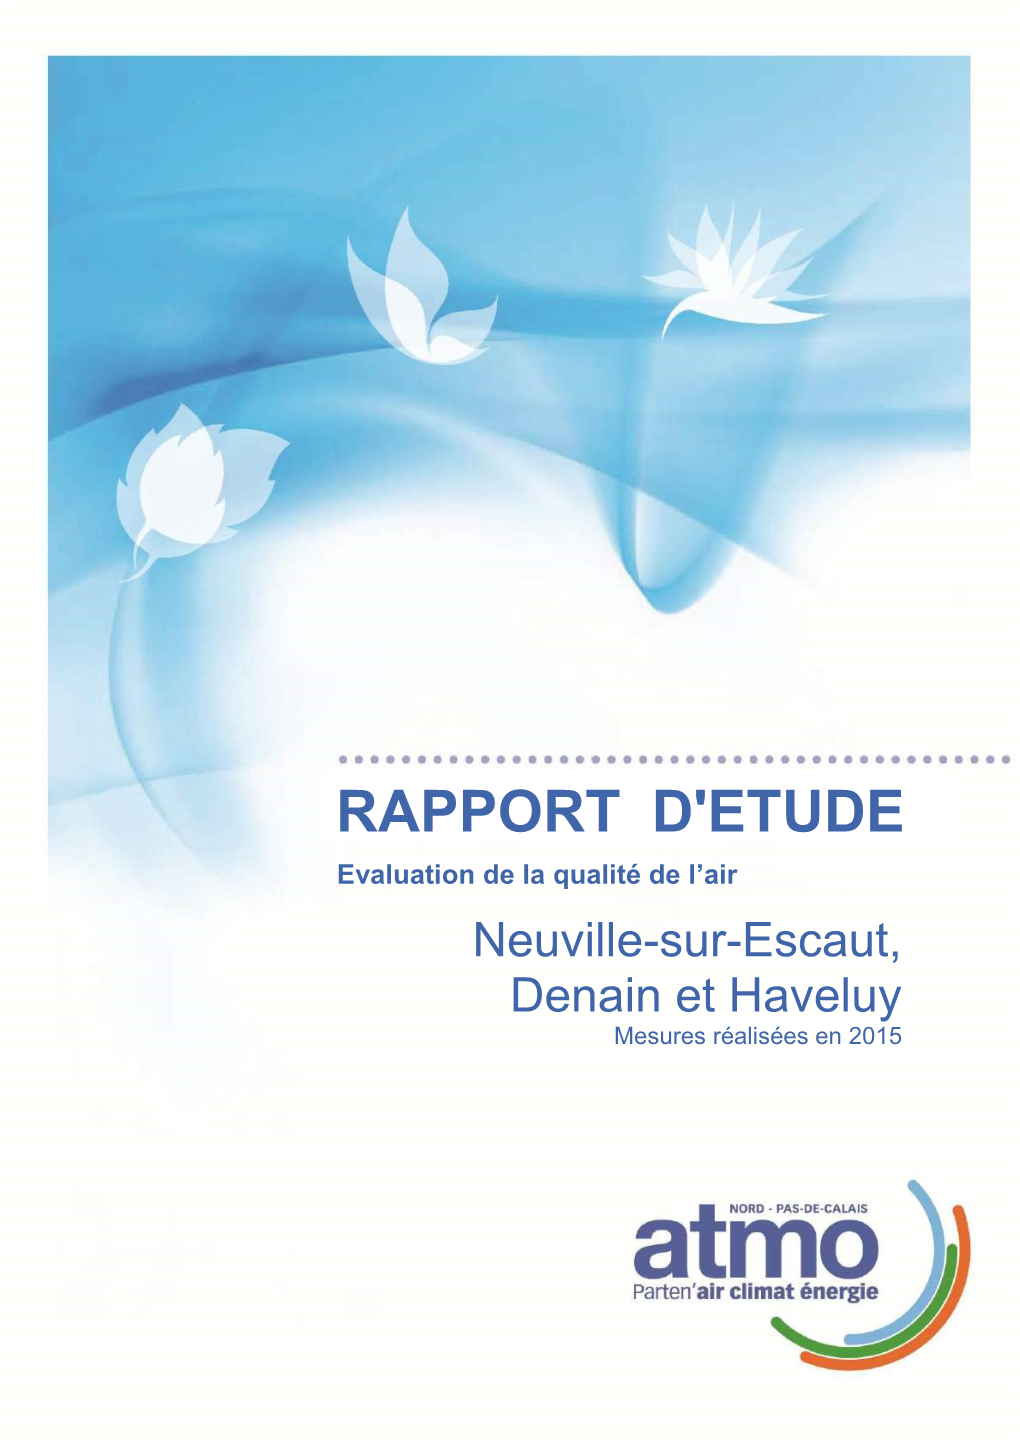 RAPPORT D'etude Evaluation De La Qualité De L’Air Neuville-Sur-Escaut, Denain Et Haveluy Mesures Réalisées En 2015